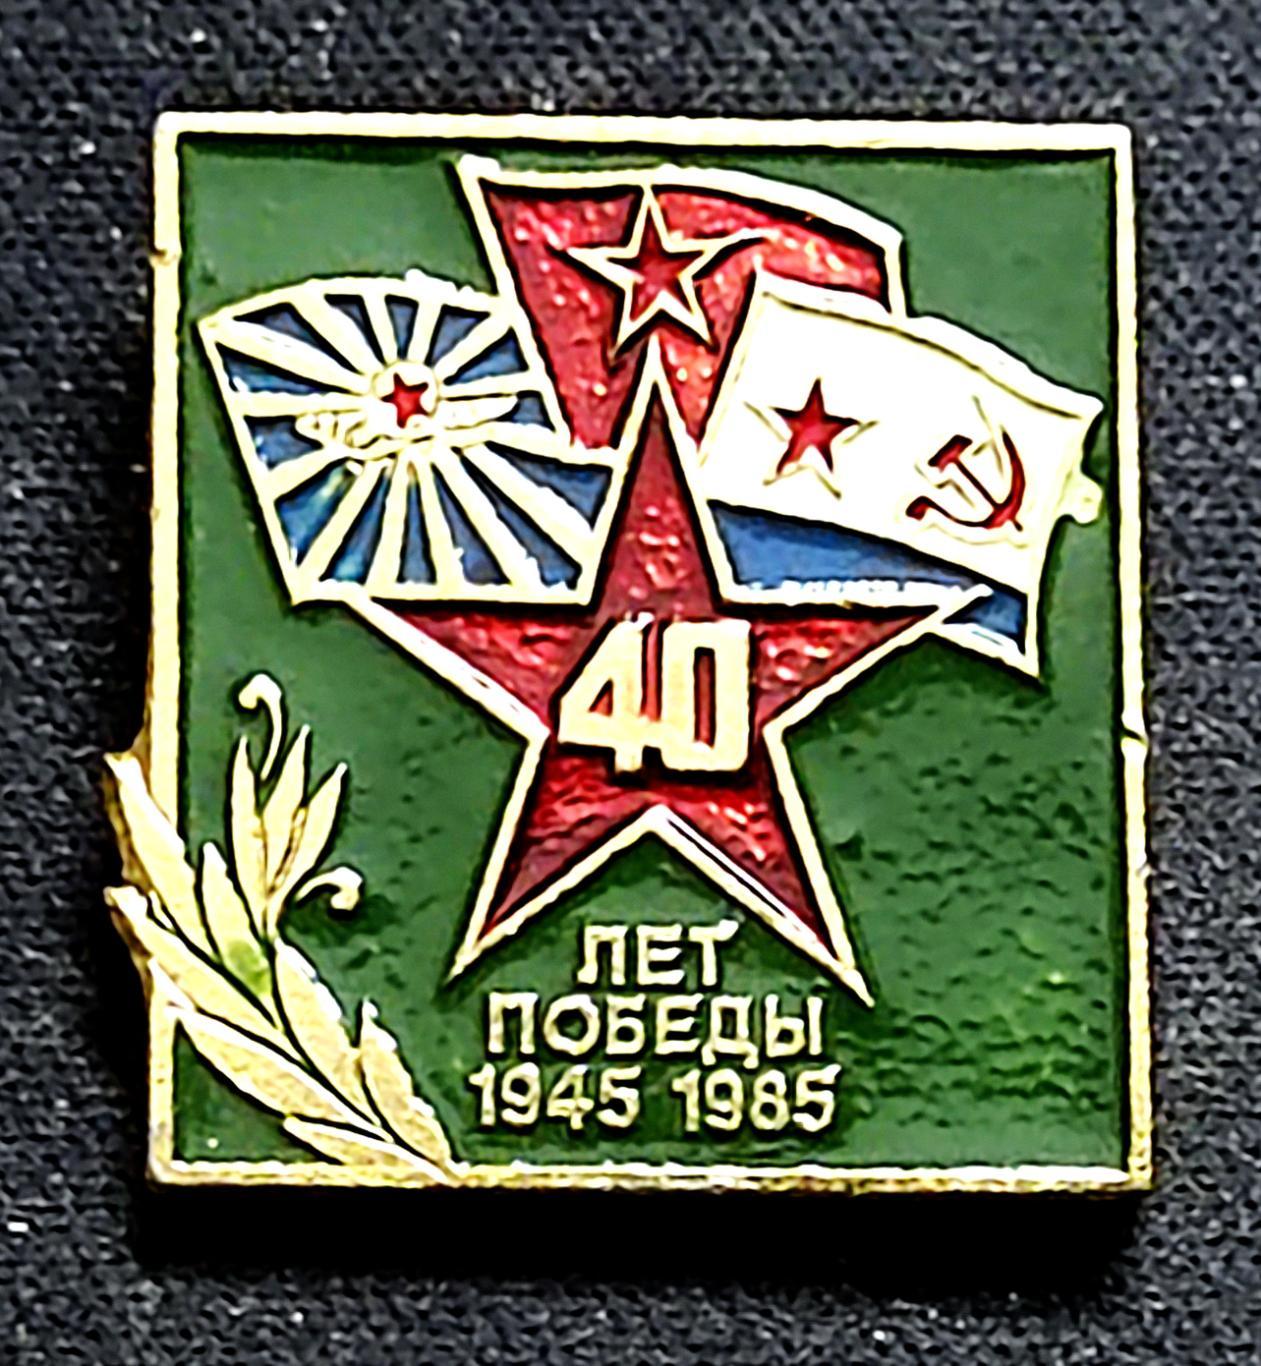 ПРАЗДНИКИ. 9 МАЯ - ДЕНЬ ПОБЕДЫ. 1945-1985